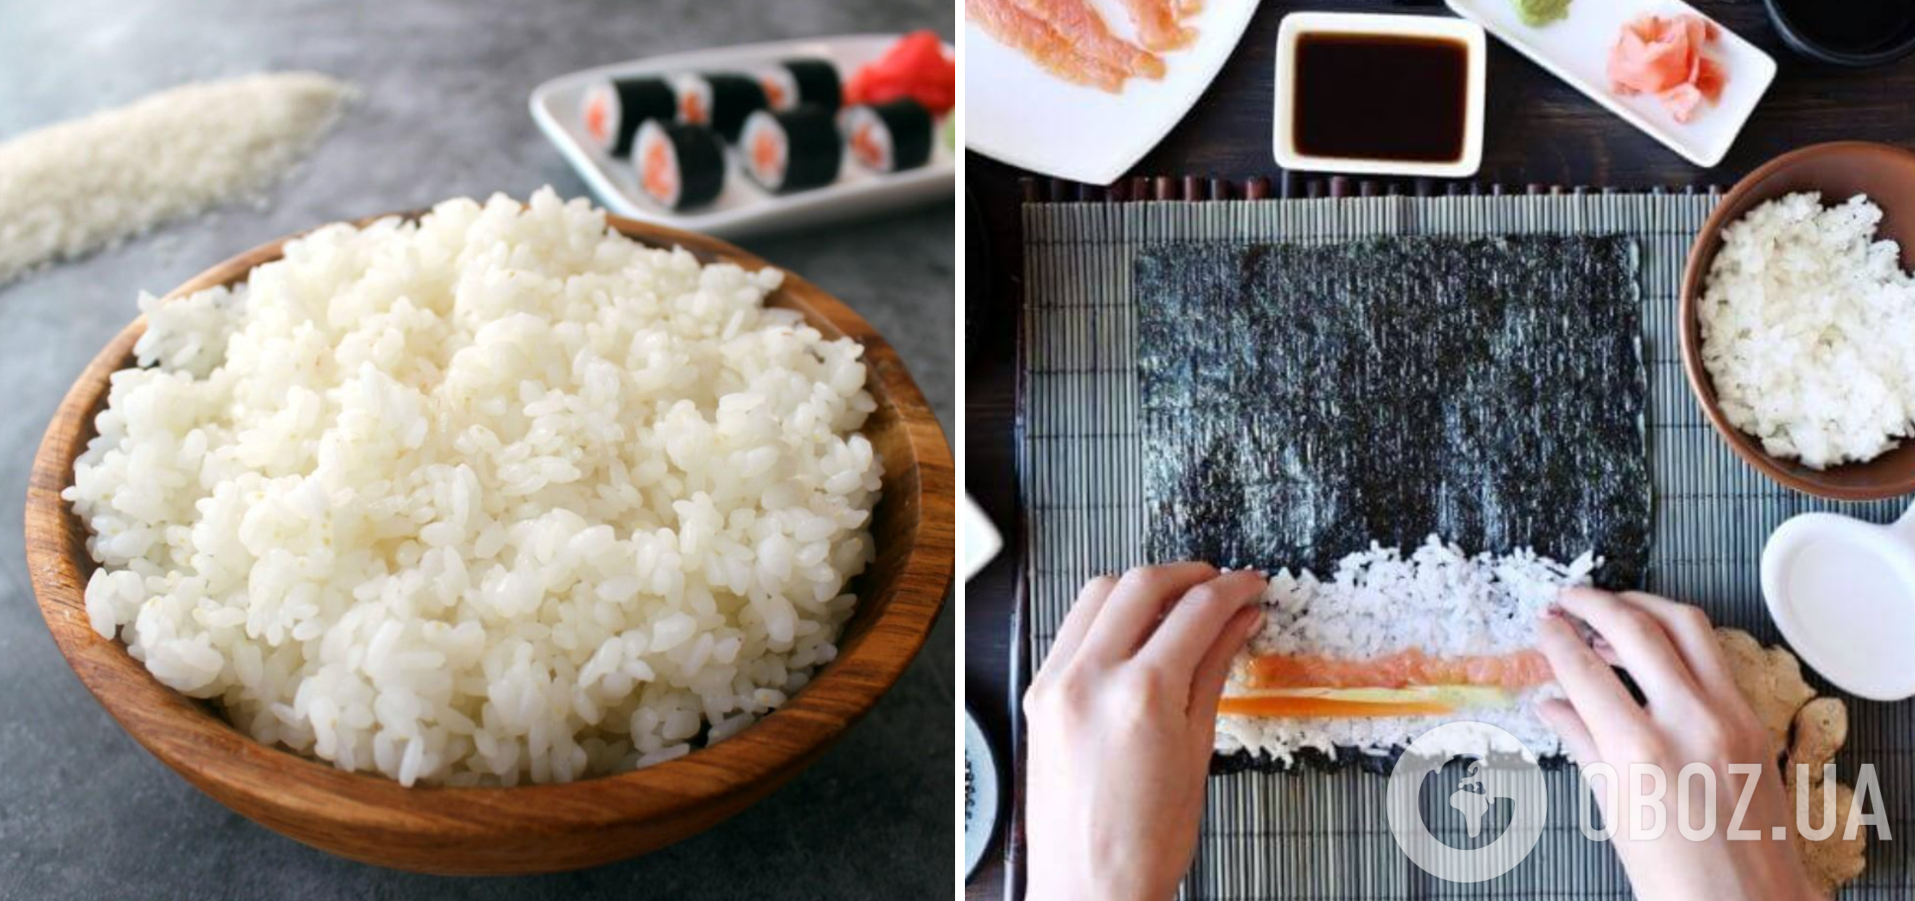 Как сварить рис на суши